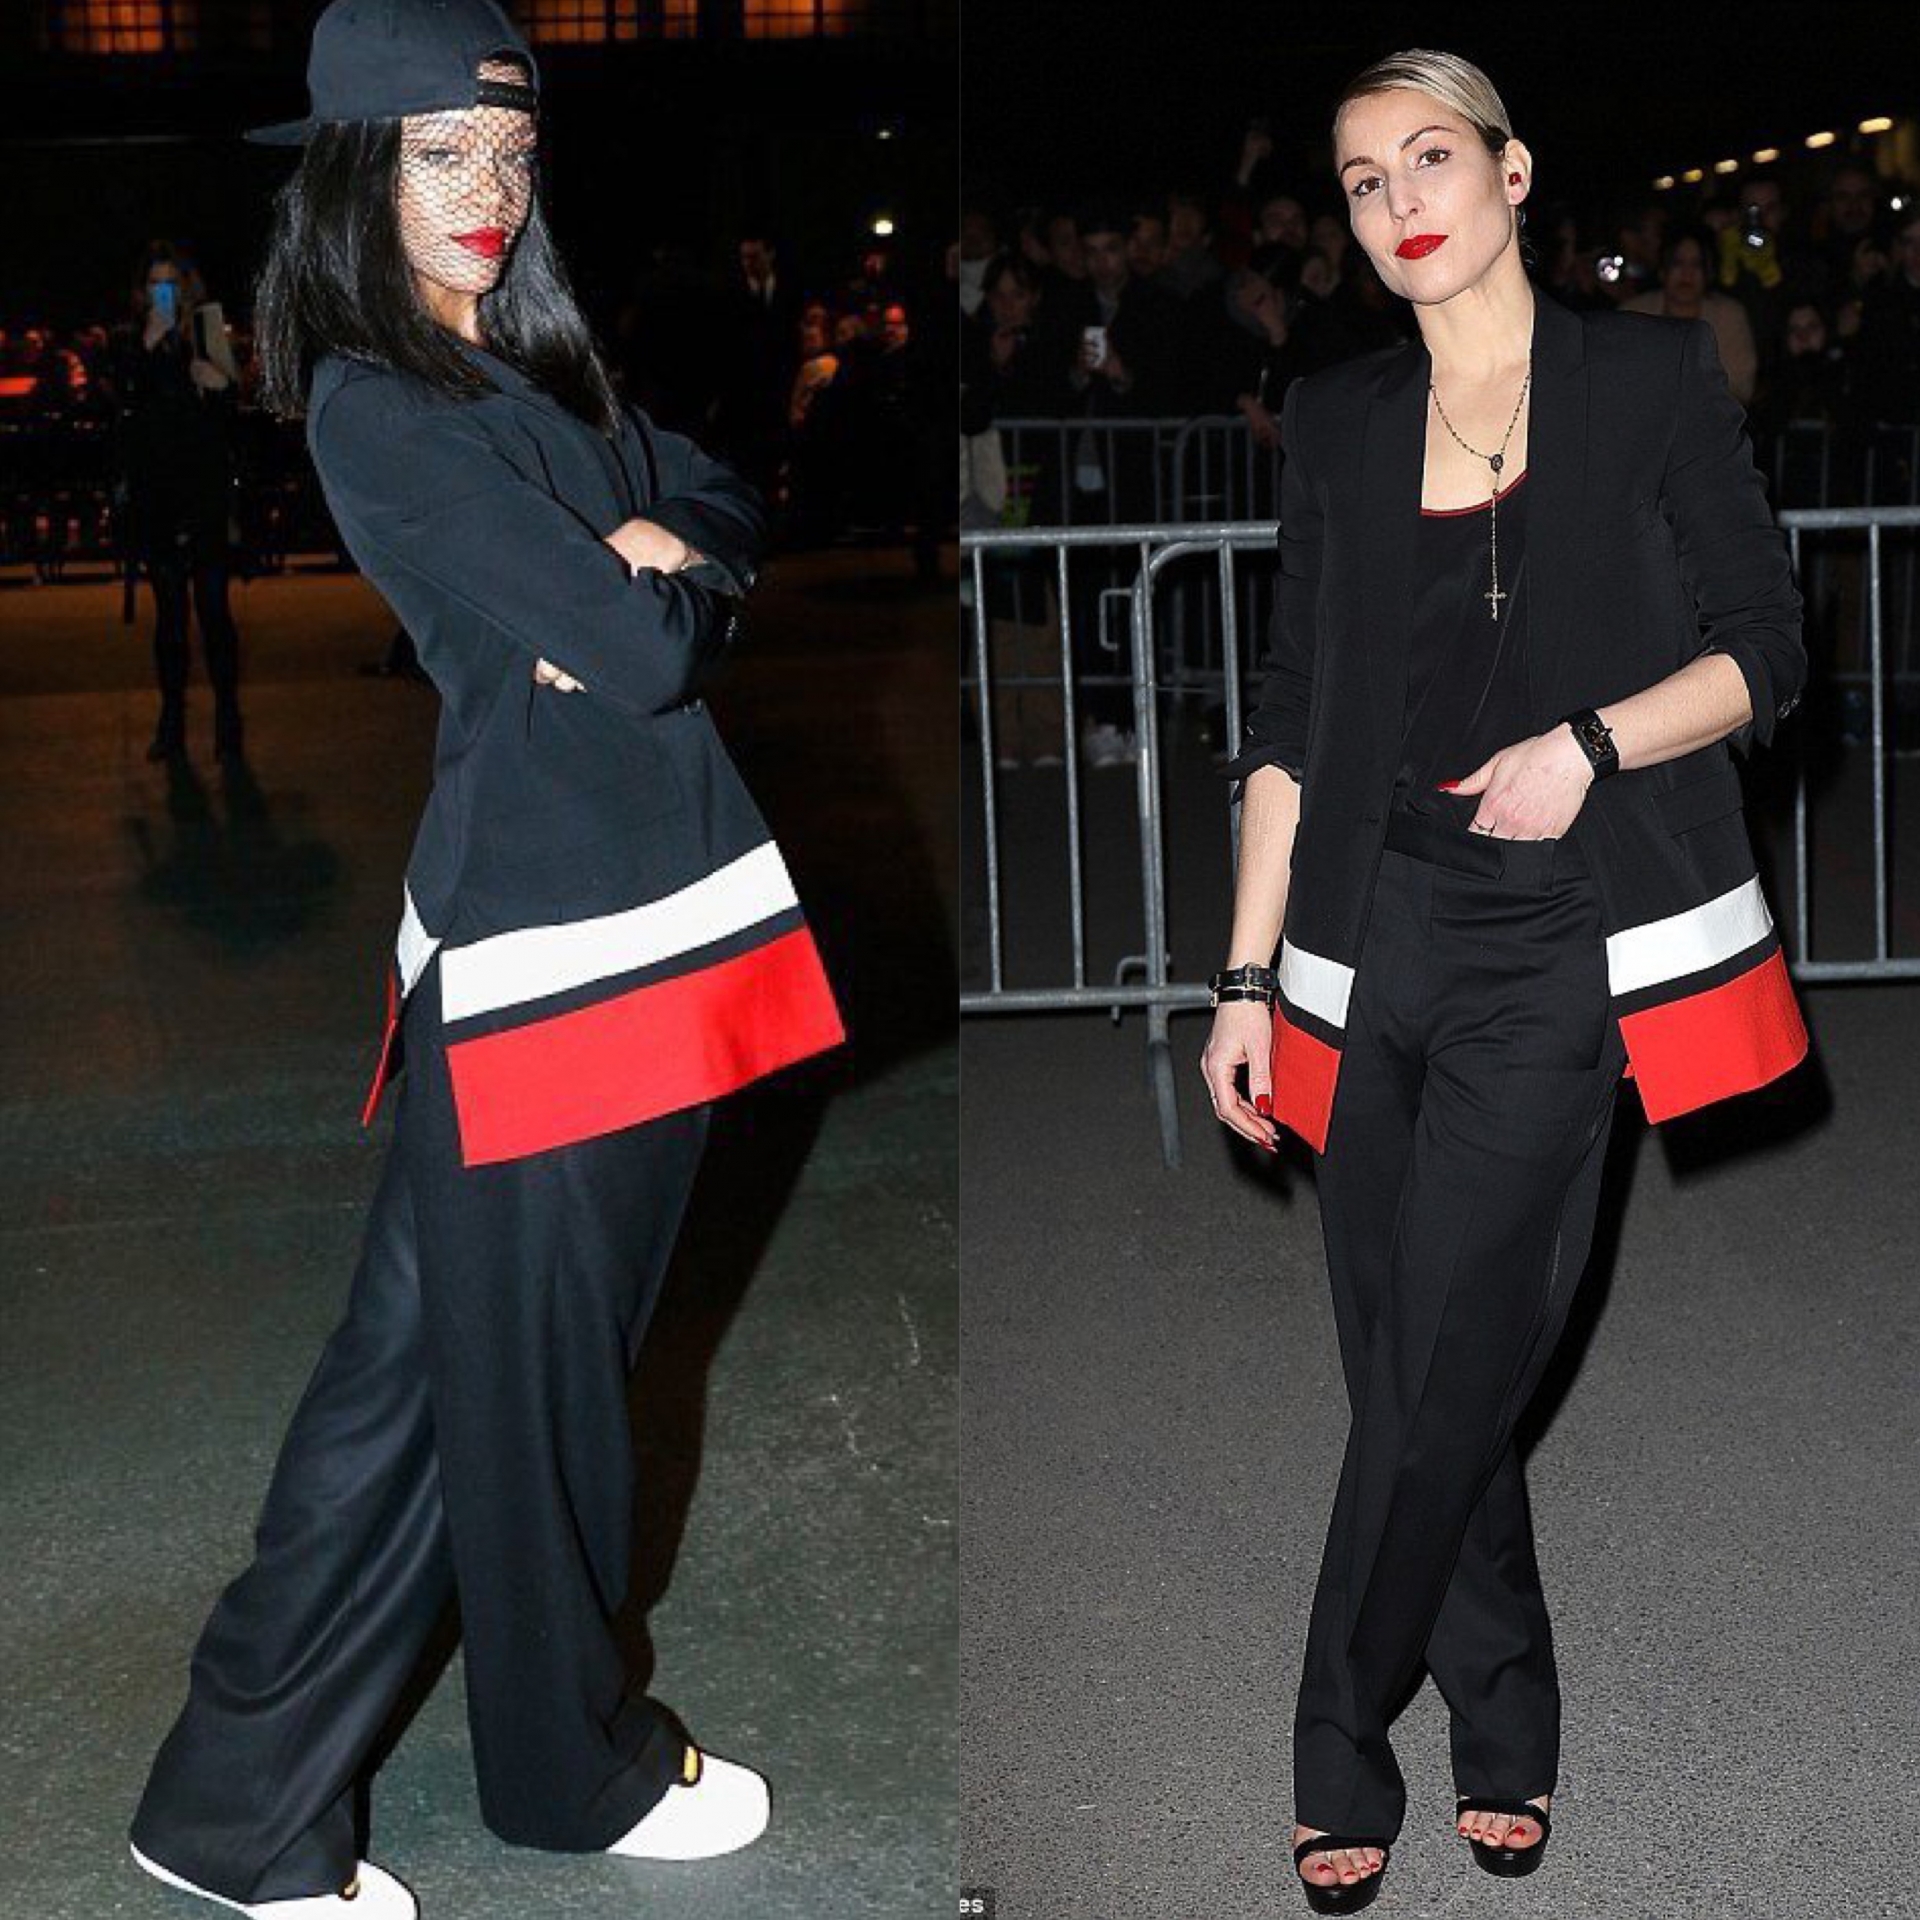 Cùng tham dự show diễn của nhà mốt Givenchy, Rihanna và Noomi Rapace gây bất ngờ khi diện bộ suit giống nhau. Tuy nhiên, cách mix đồ của 2 người đẹp lại khác nhau và lần này phần thắng đã thuộc về Rihanna.